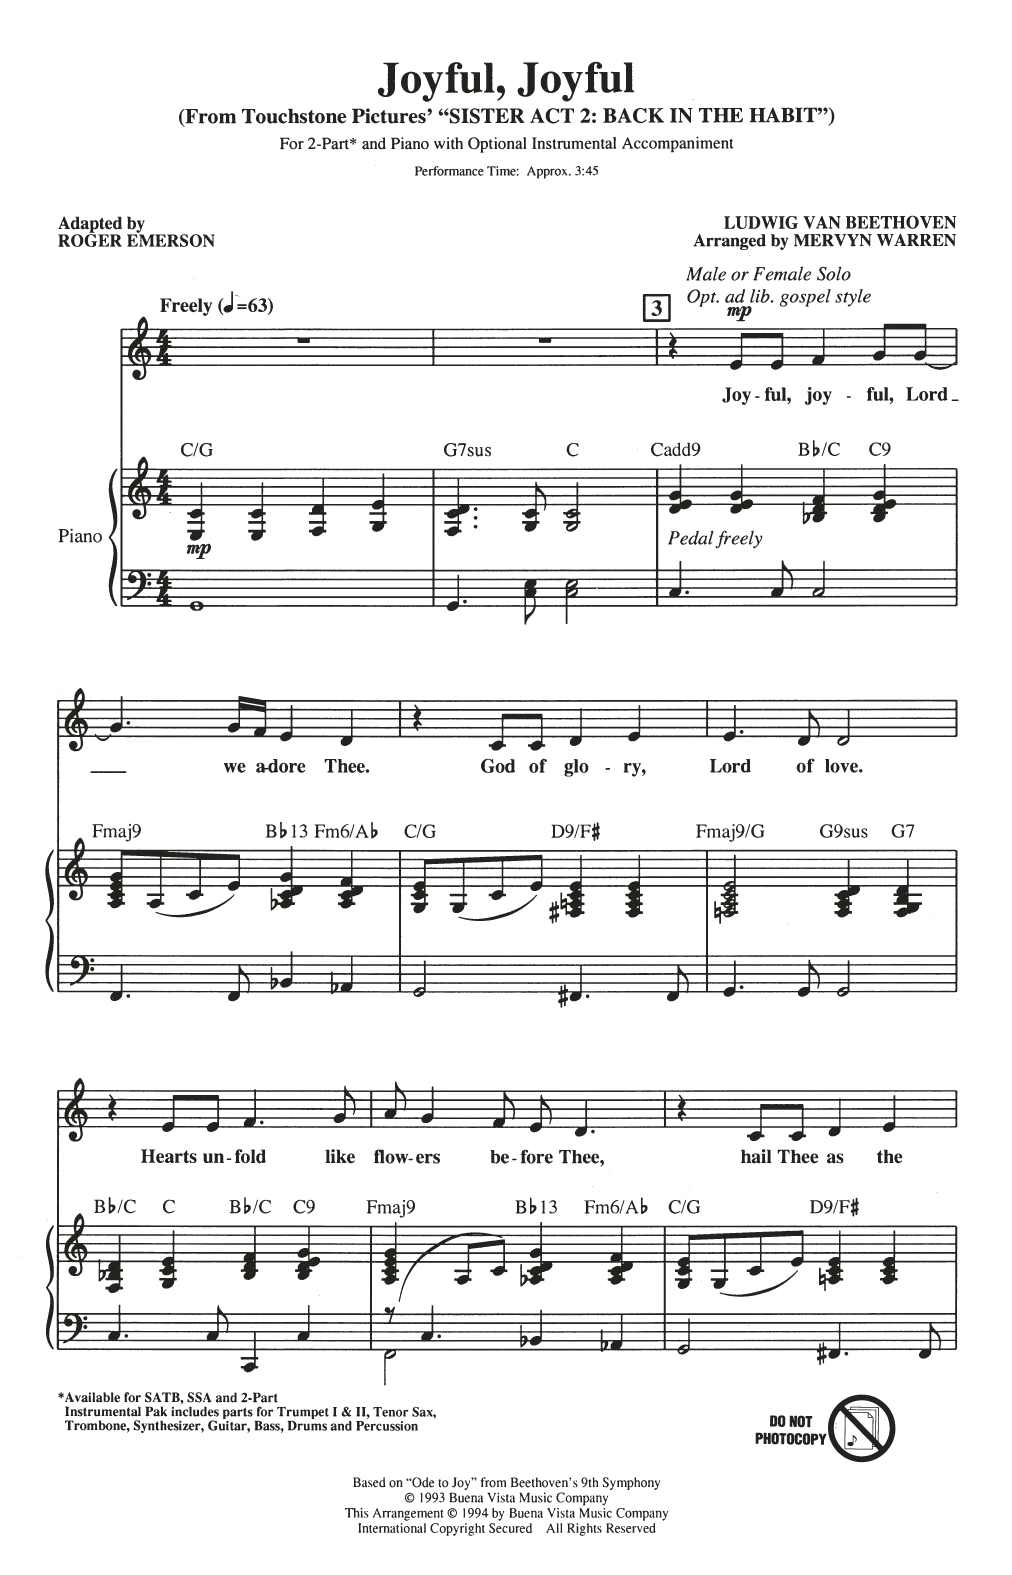 Mervyn Warren Joyful, Joyful (from Sister Act 2) (arr. Roger Emerson) sheet music notes and chords arranged for 2-Part Choir